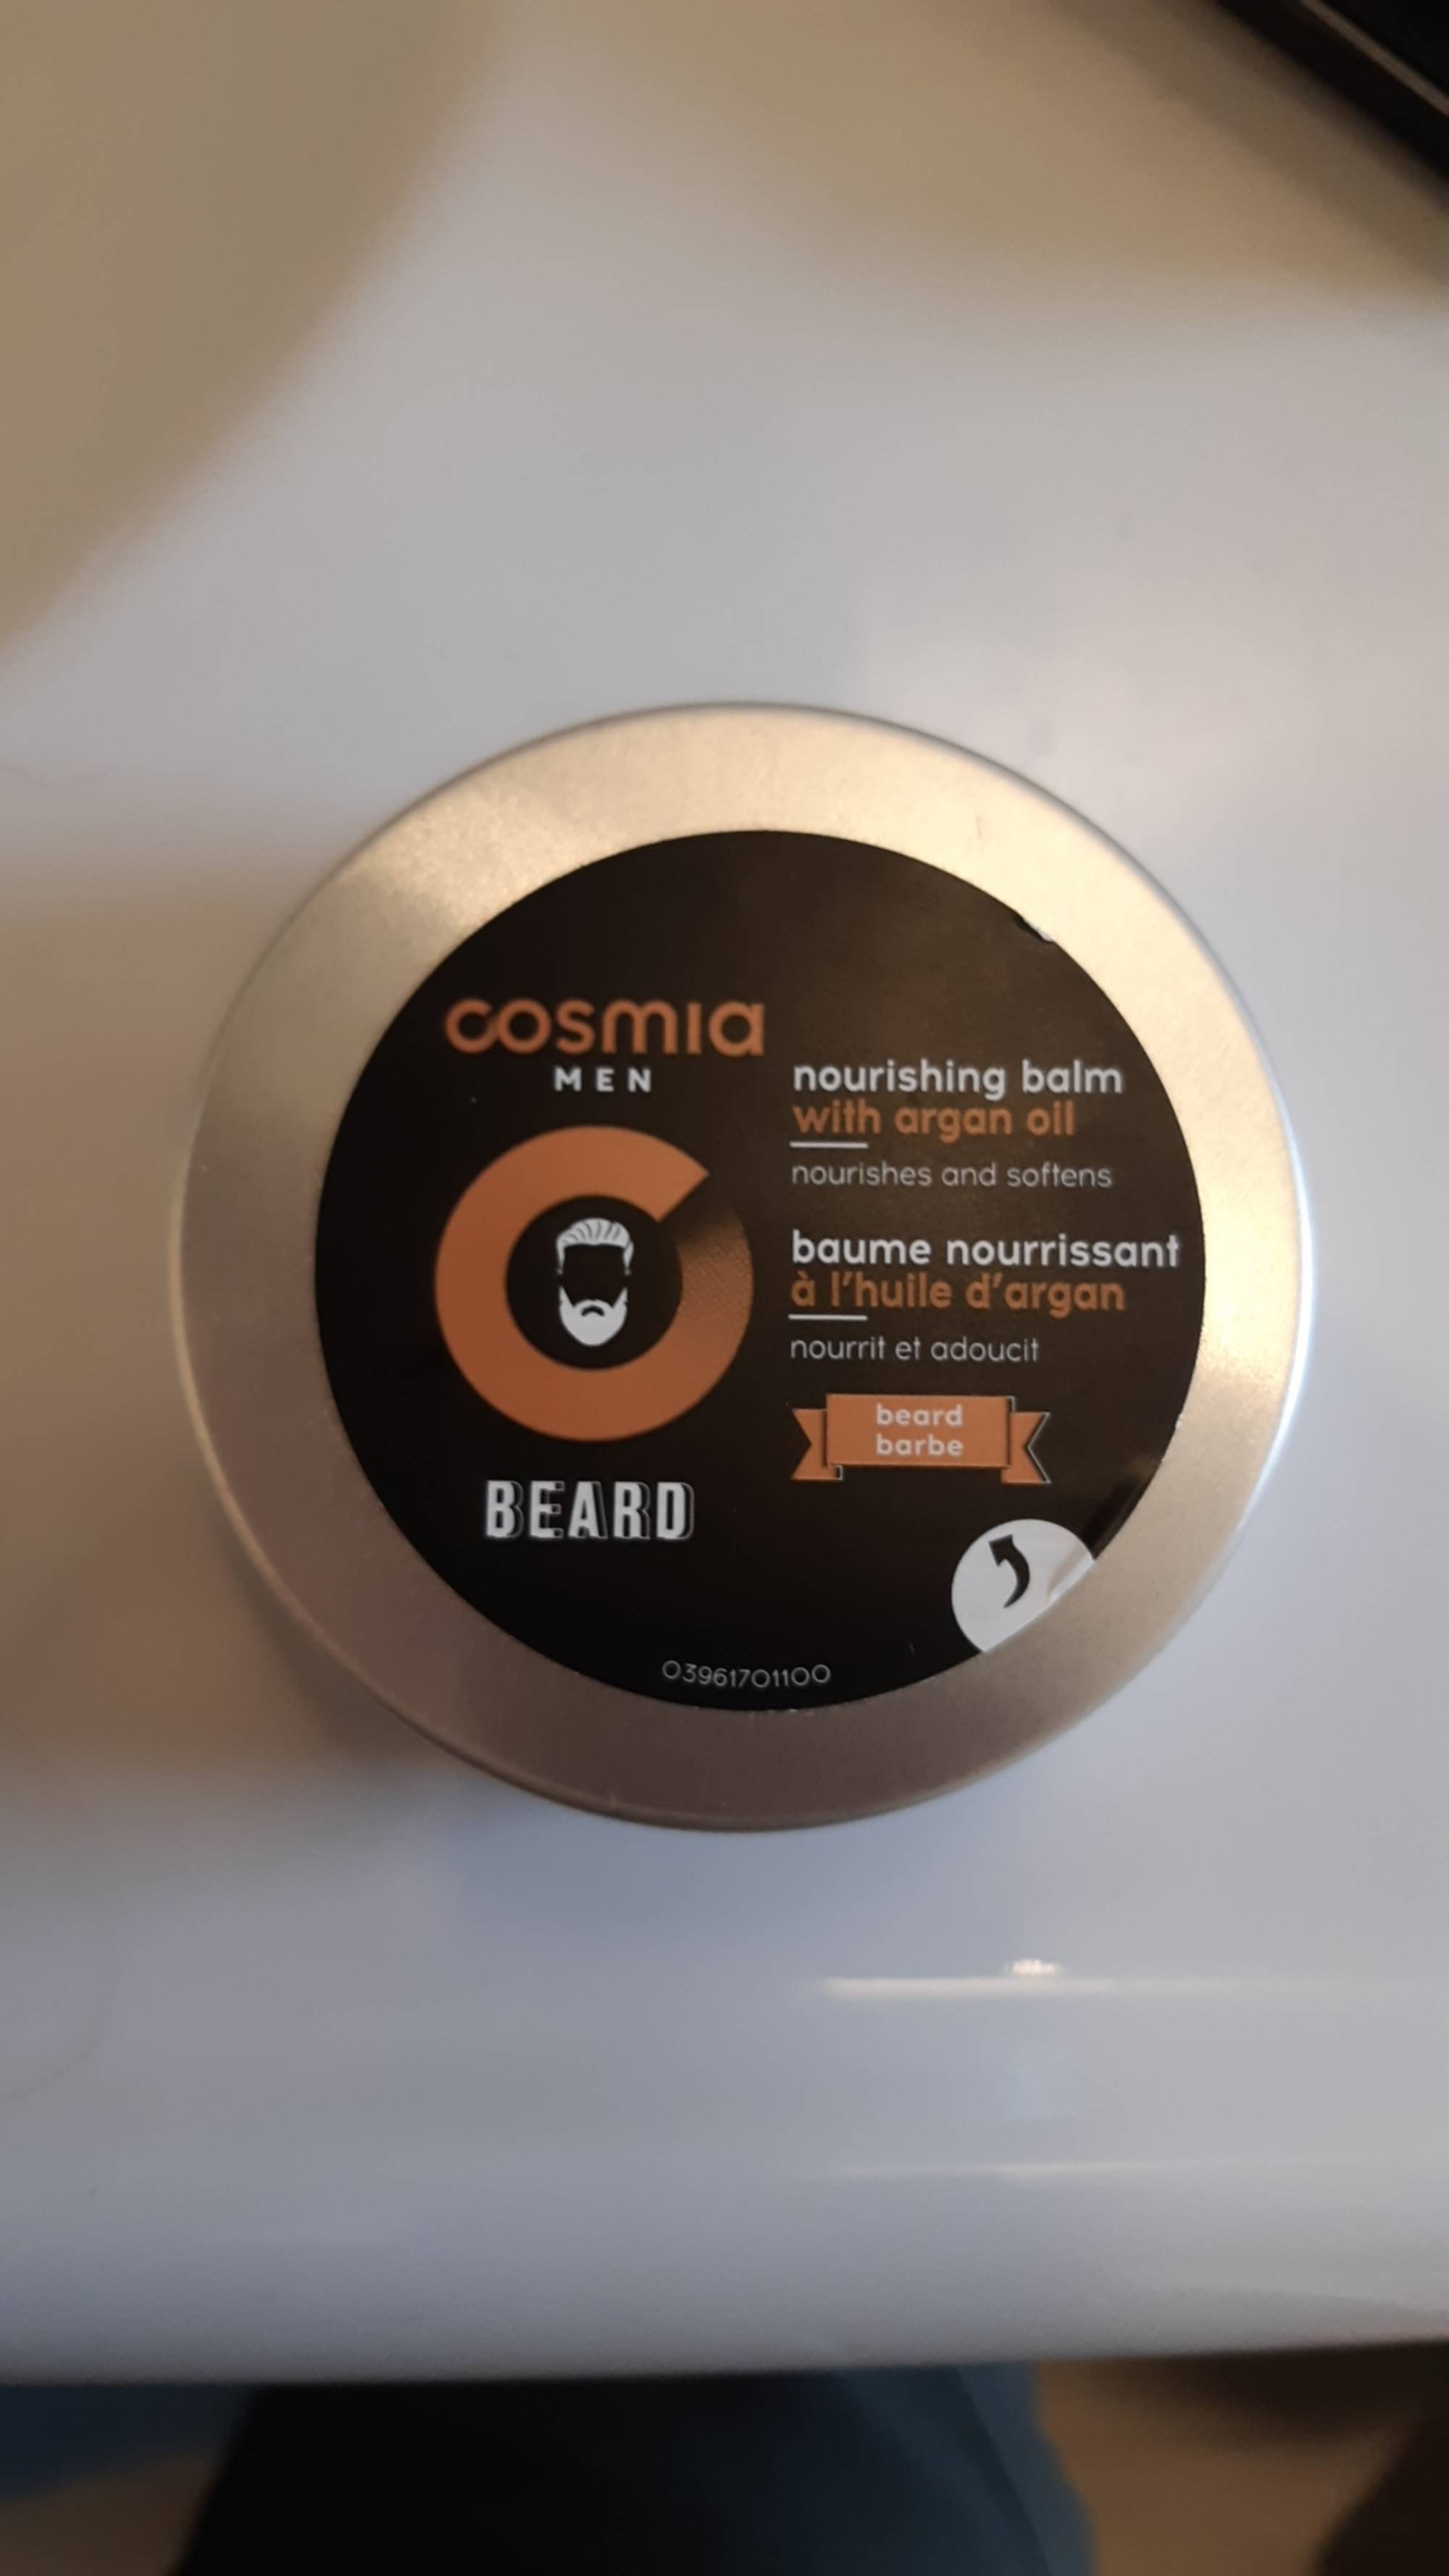 COSMIA - Men beard - Baume nourrissant à l'huile d'argan